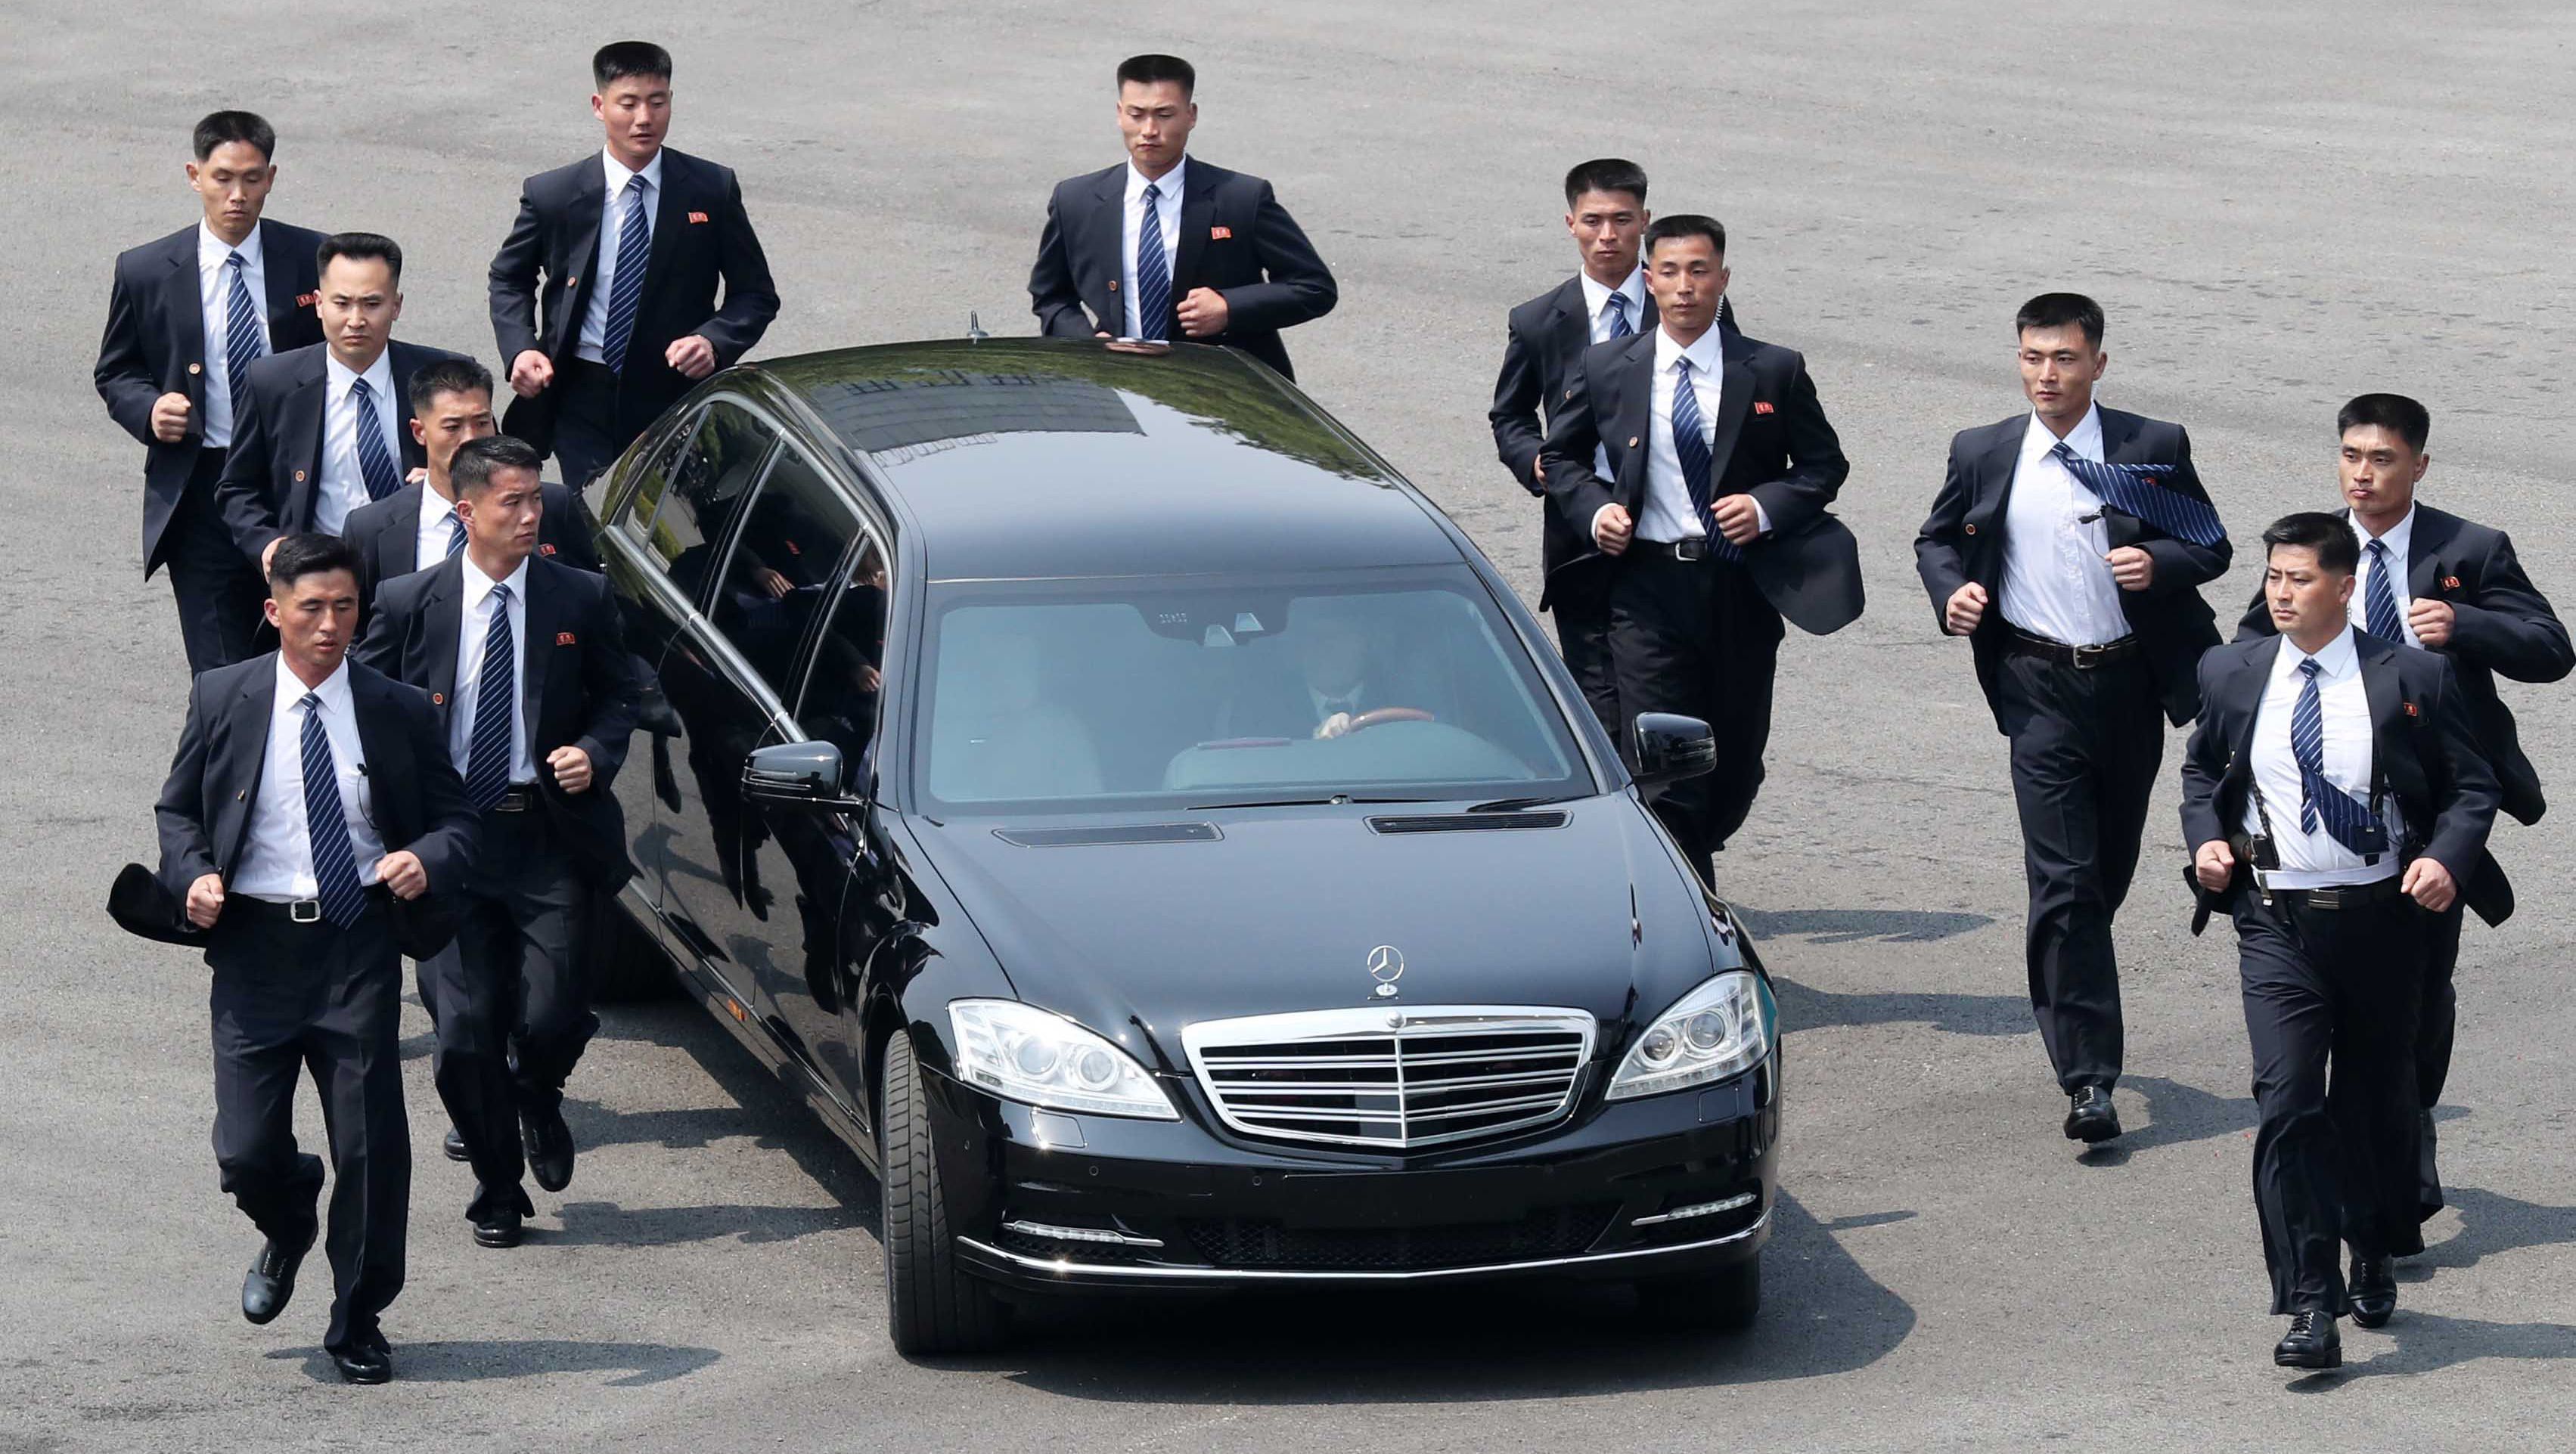 سر امتلاك زعيم كوريا الشمالية سيارات مرسيدس بولمان المحظورة على بلاده 1